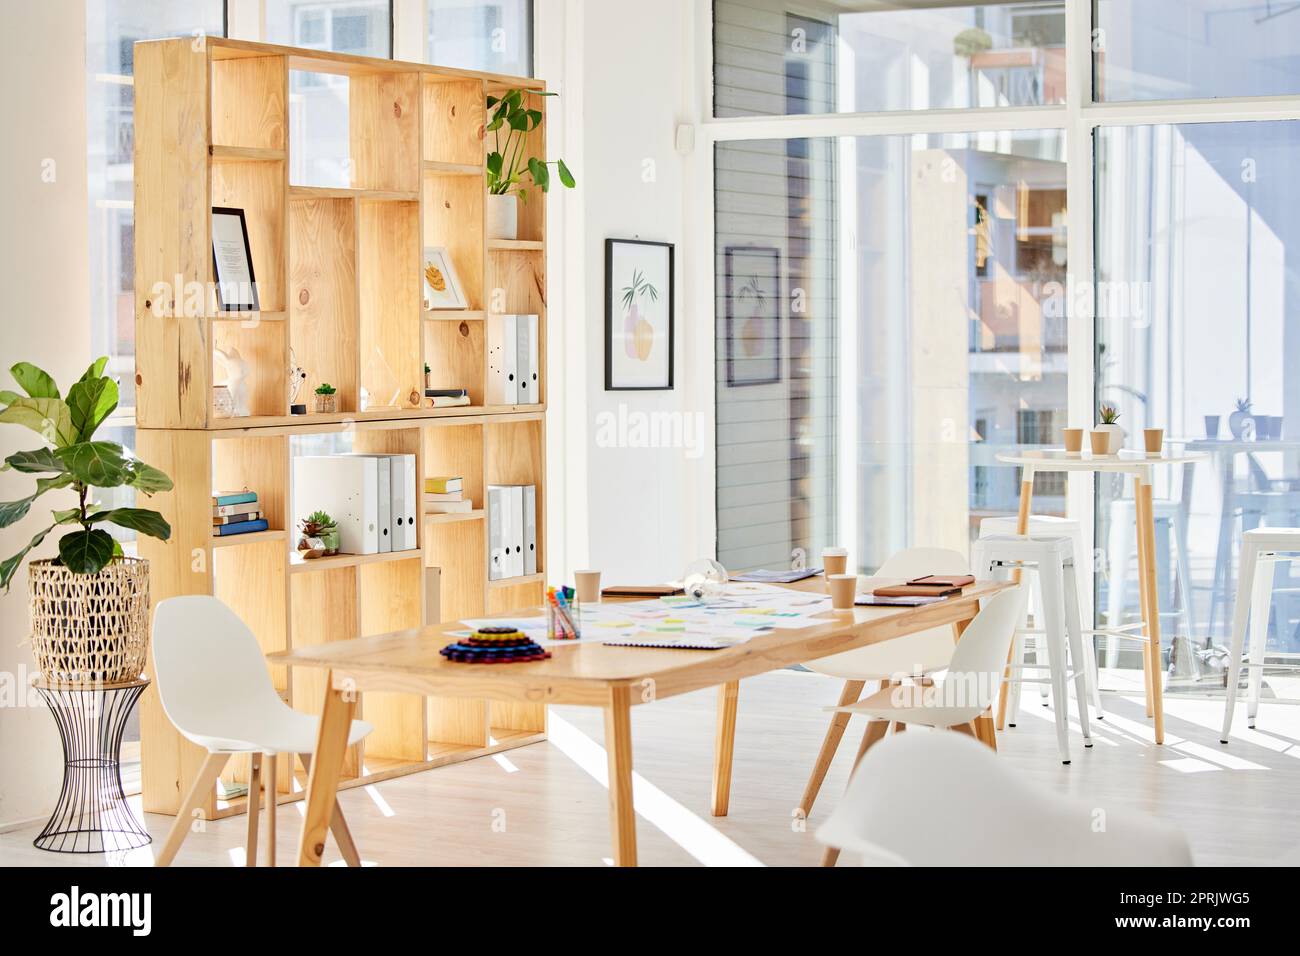 Bureau intérieur vide avec lumière, mobilier en bois et espace de travail pour les affaires et le travail. Décoration moderne et minimaliste d'une salle d'entreprise ou créative pour les employés ou le personnel Banque D'Images